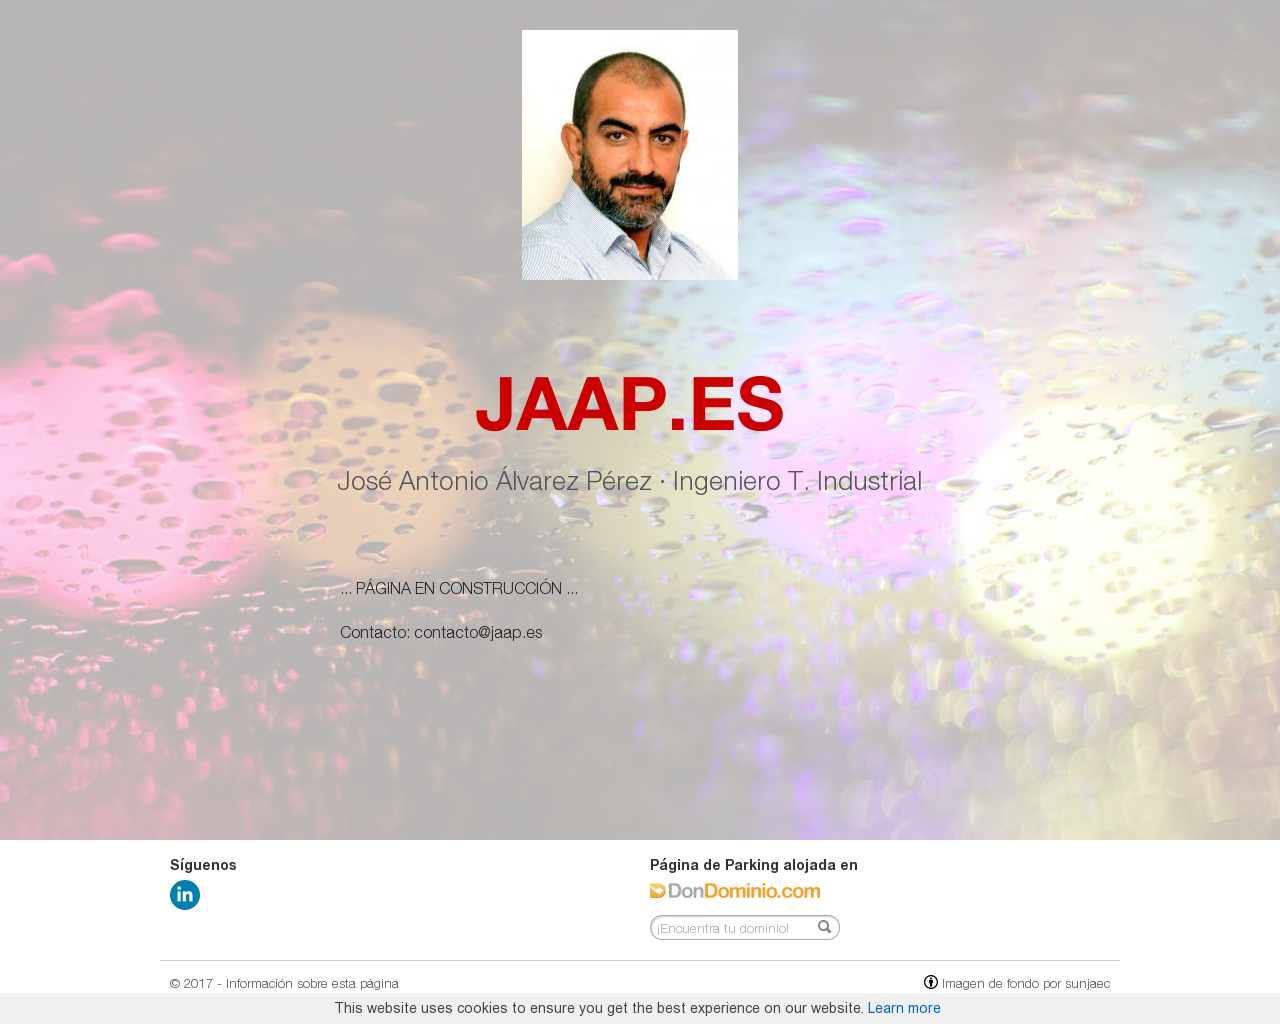 El sitio de la imagen jaap.es en 1280x1024